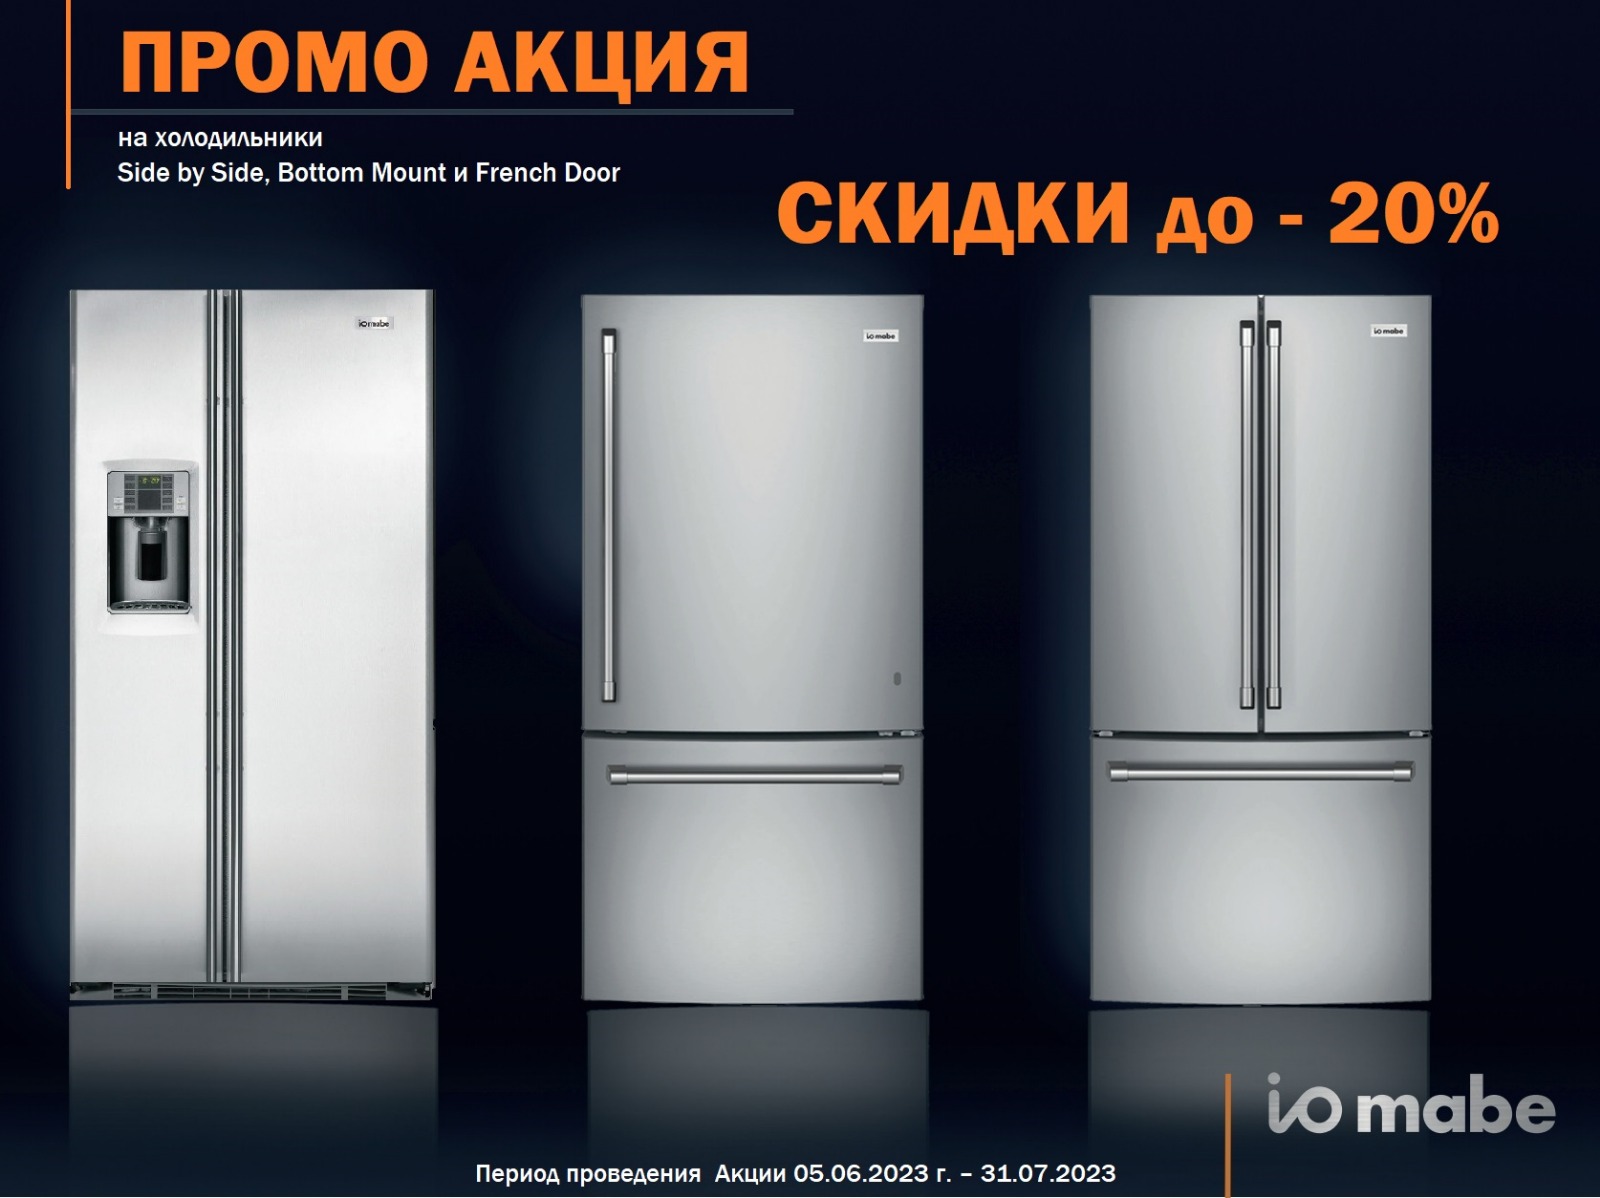 Акция IO MABE: скидки на холодильники до 20%